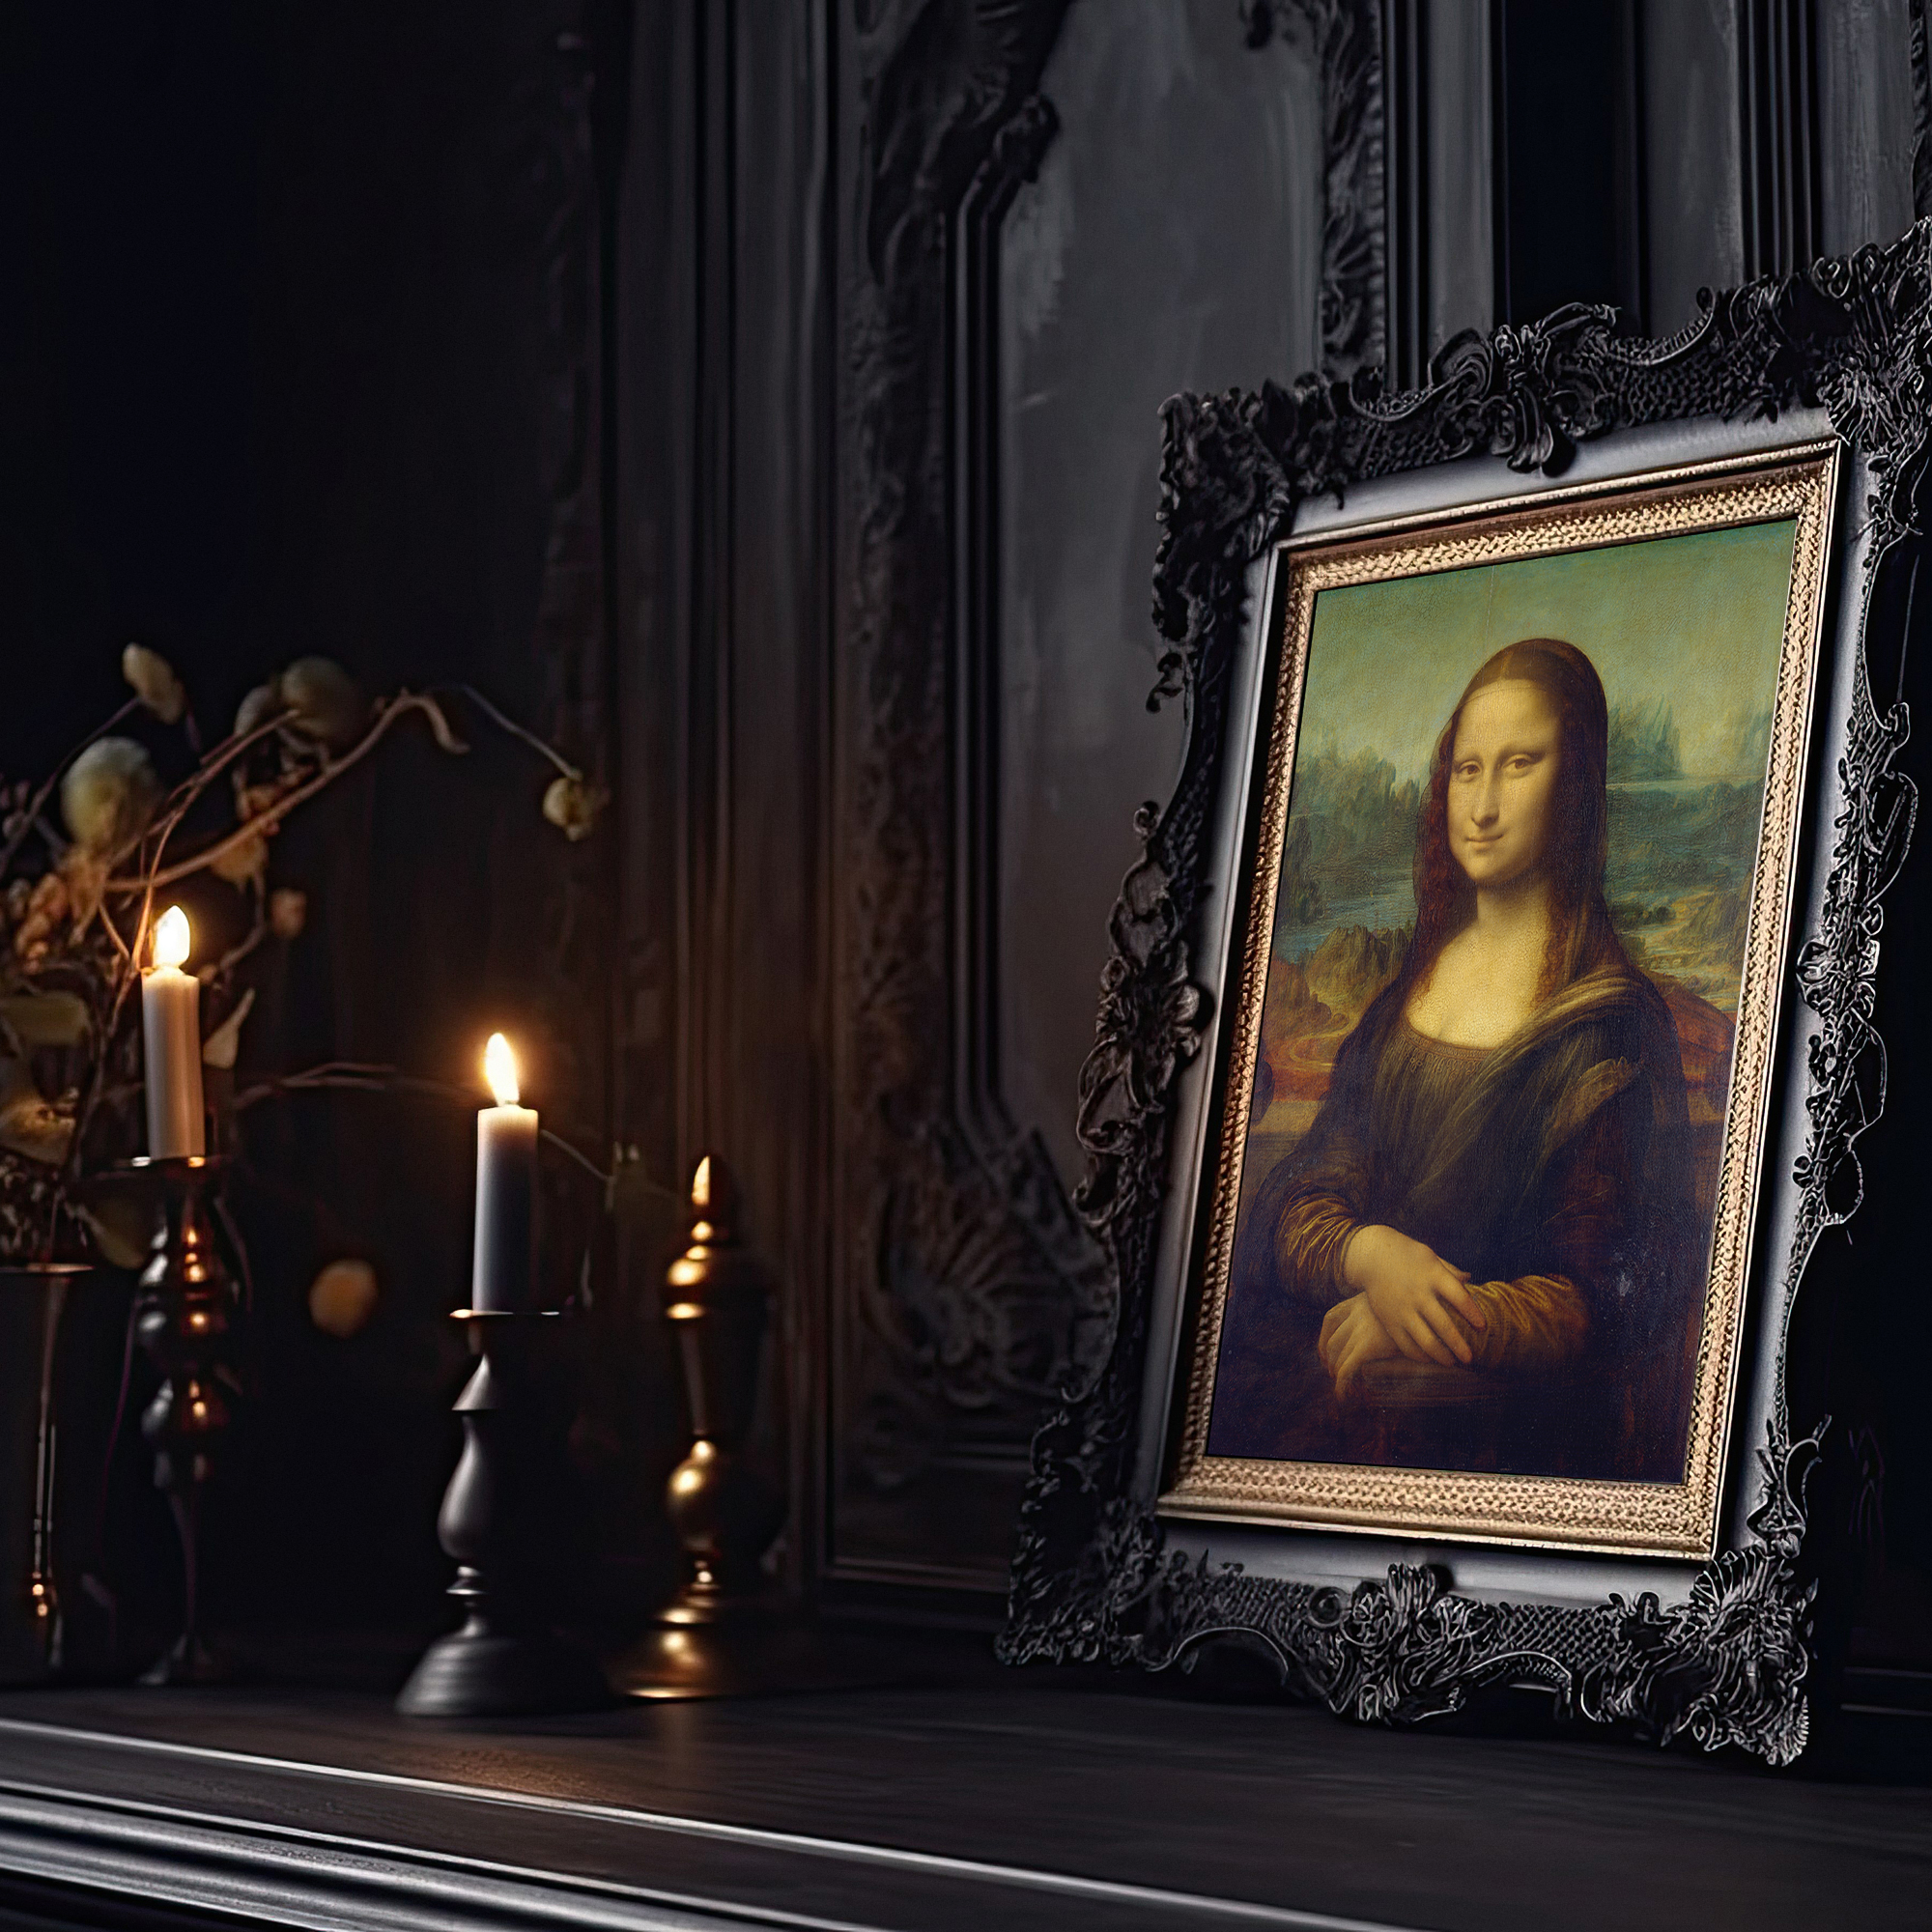 Mona Lisa by Leonardo da Vinci Print, Dark Academia, Gothic Art, Classic Art